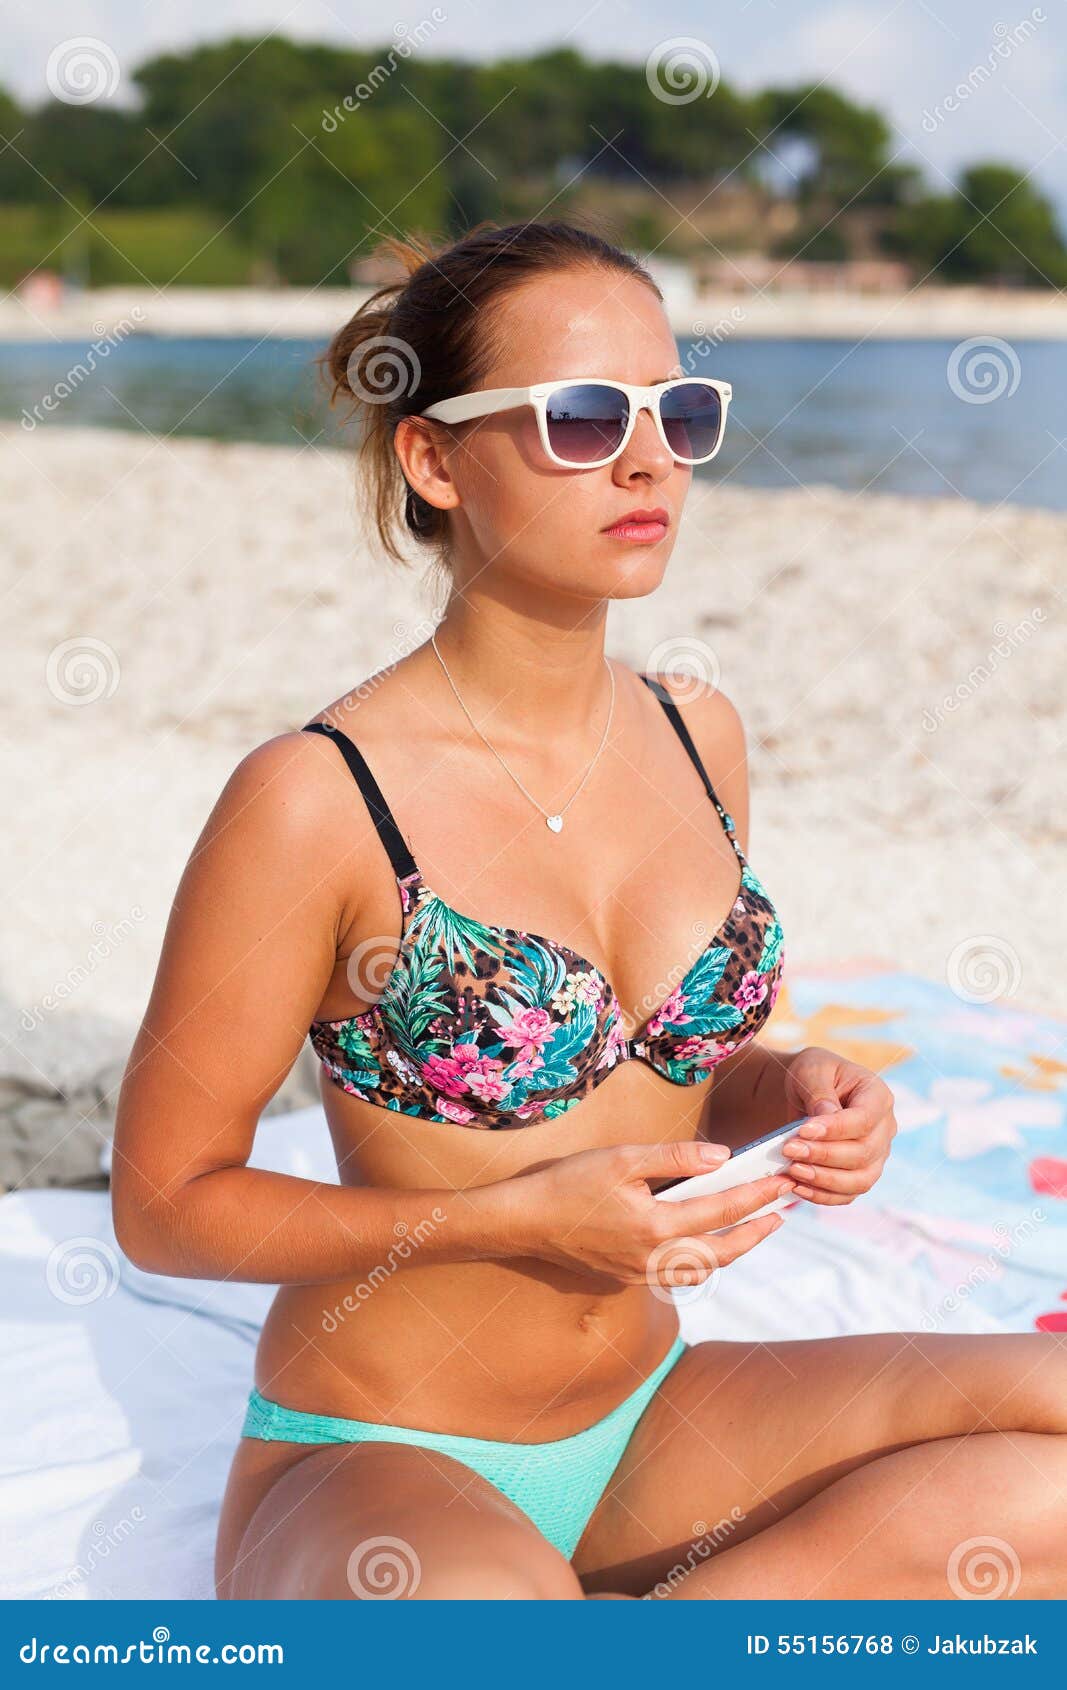 Видно плавки. Красотка сидя видно плавочки. Ближе к нему на пляже в купальнице. Девушка стдить плавка видно.